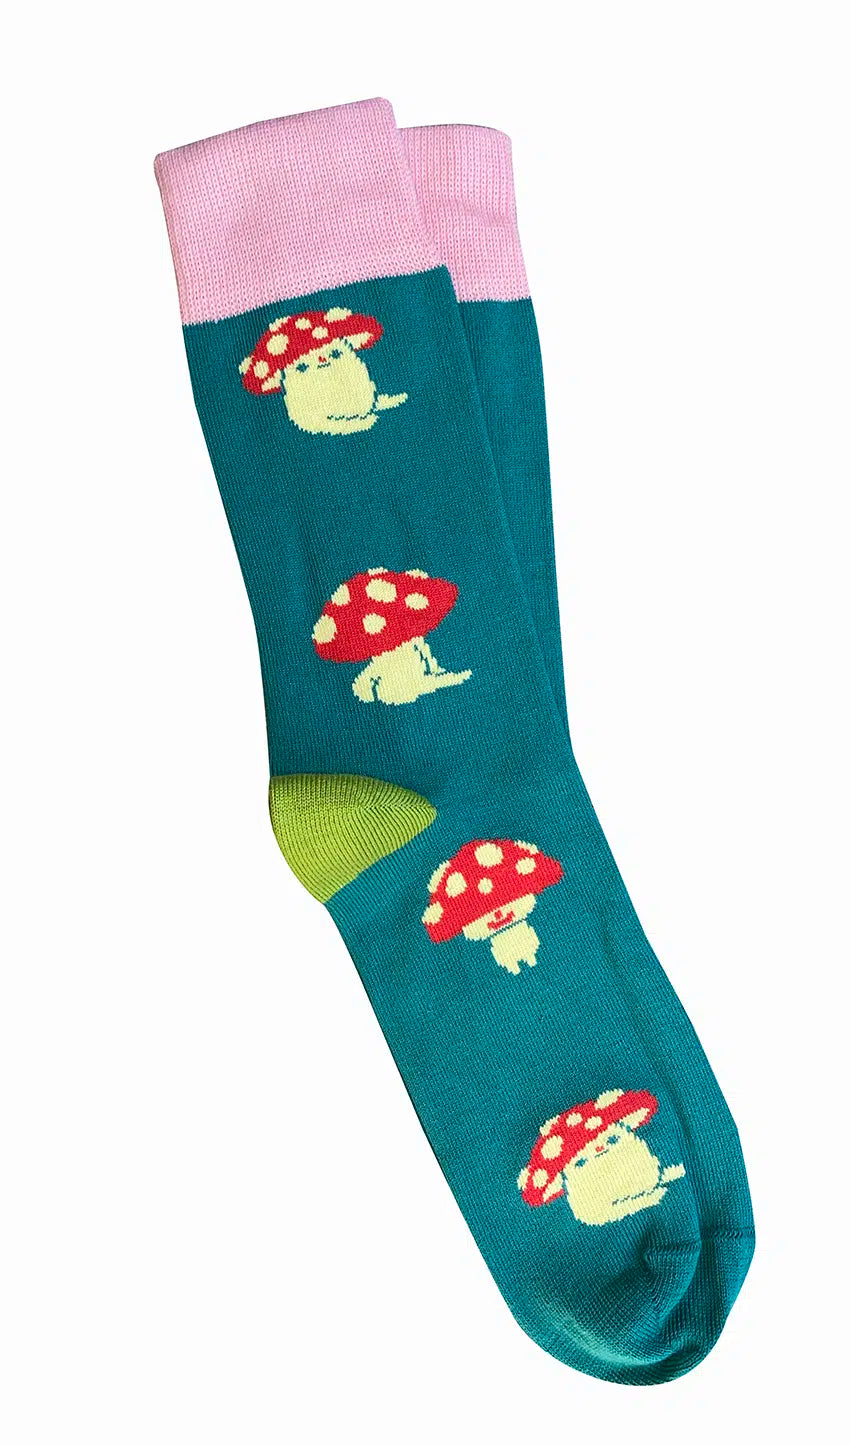 'Mushrooms' Cotton Socks - Tightology socks Tightology Teal 